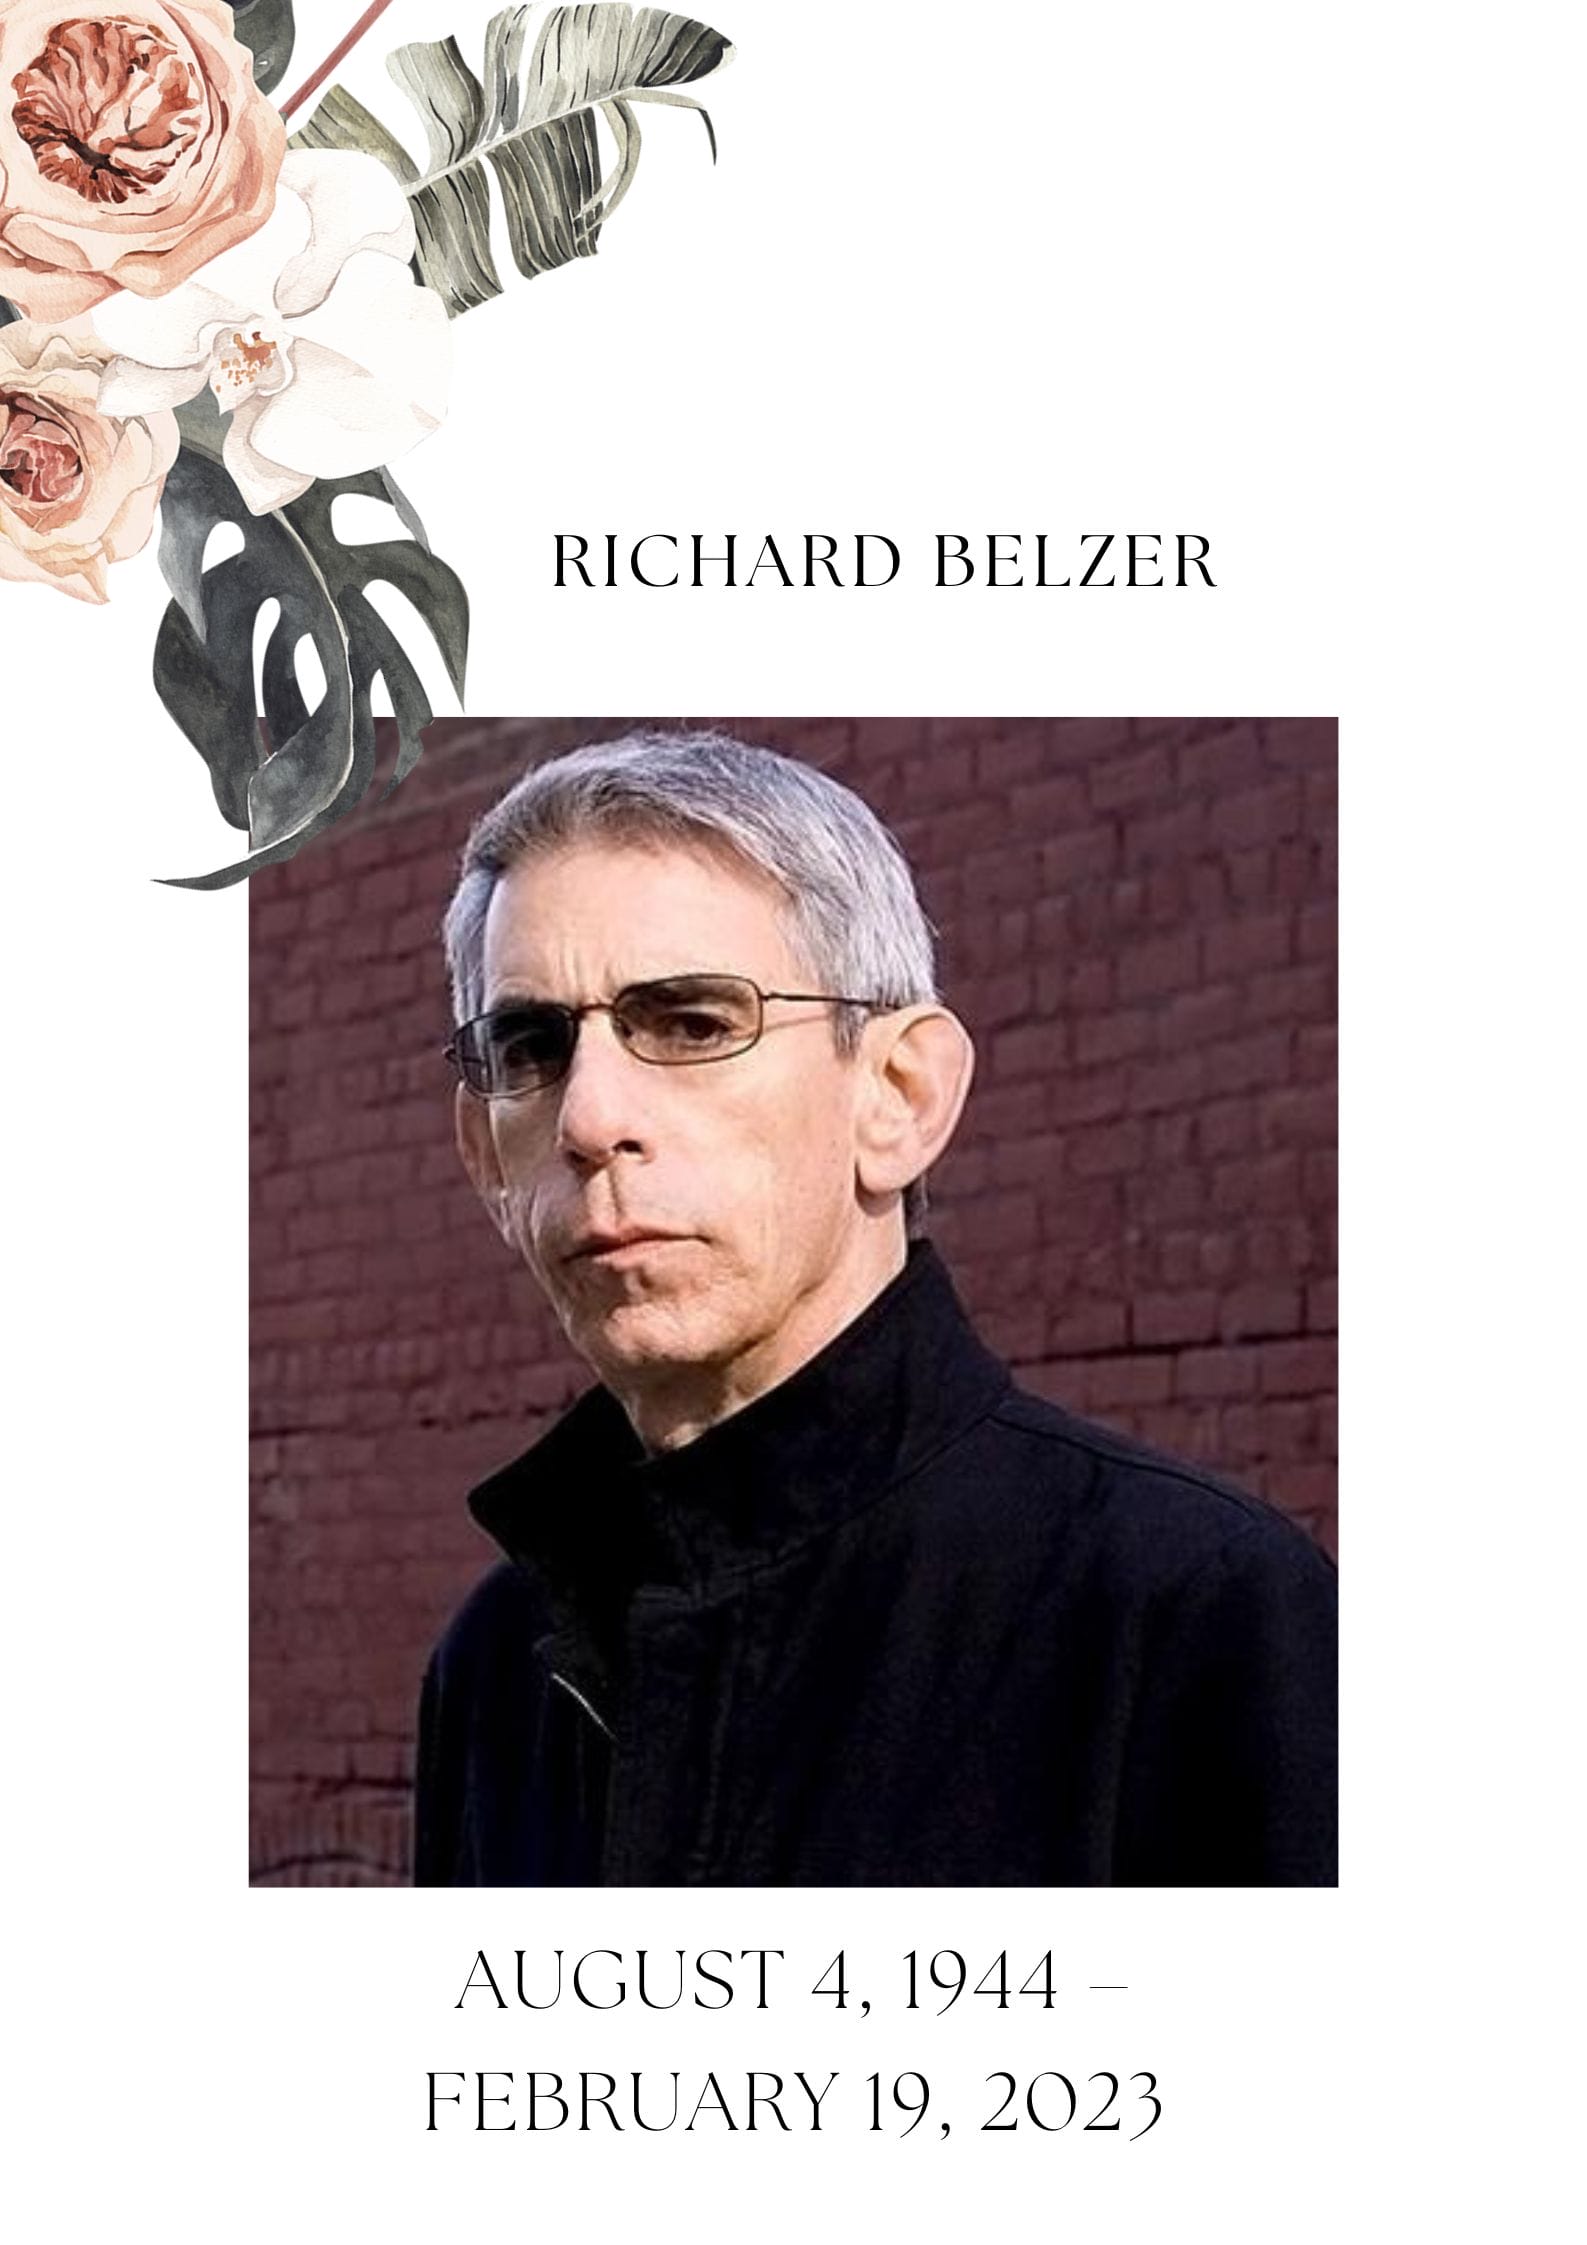 Richard Belzer Death